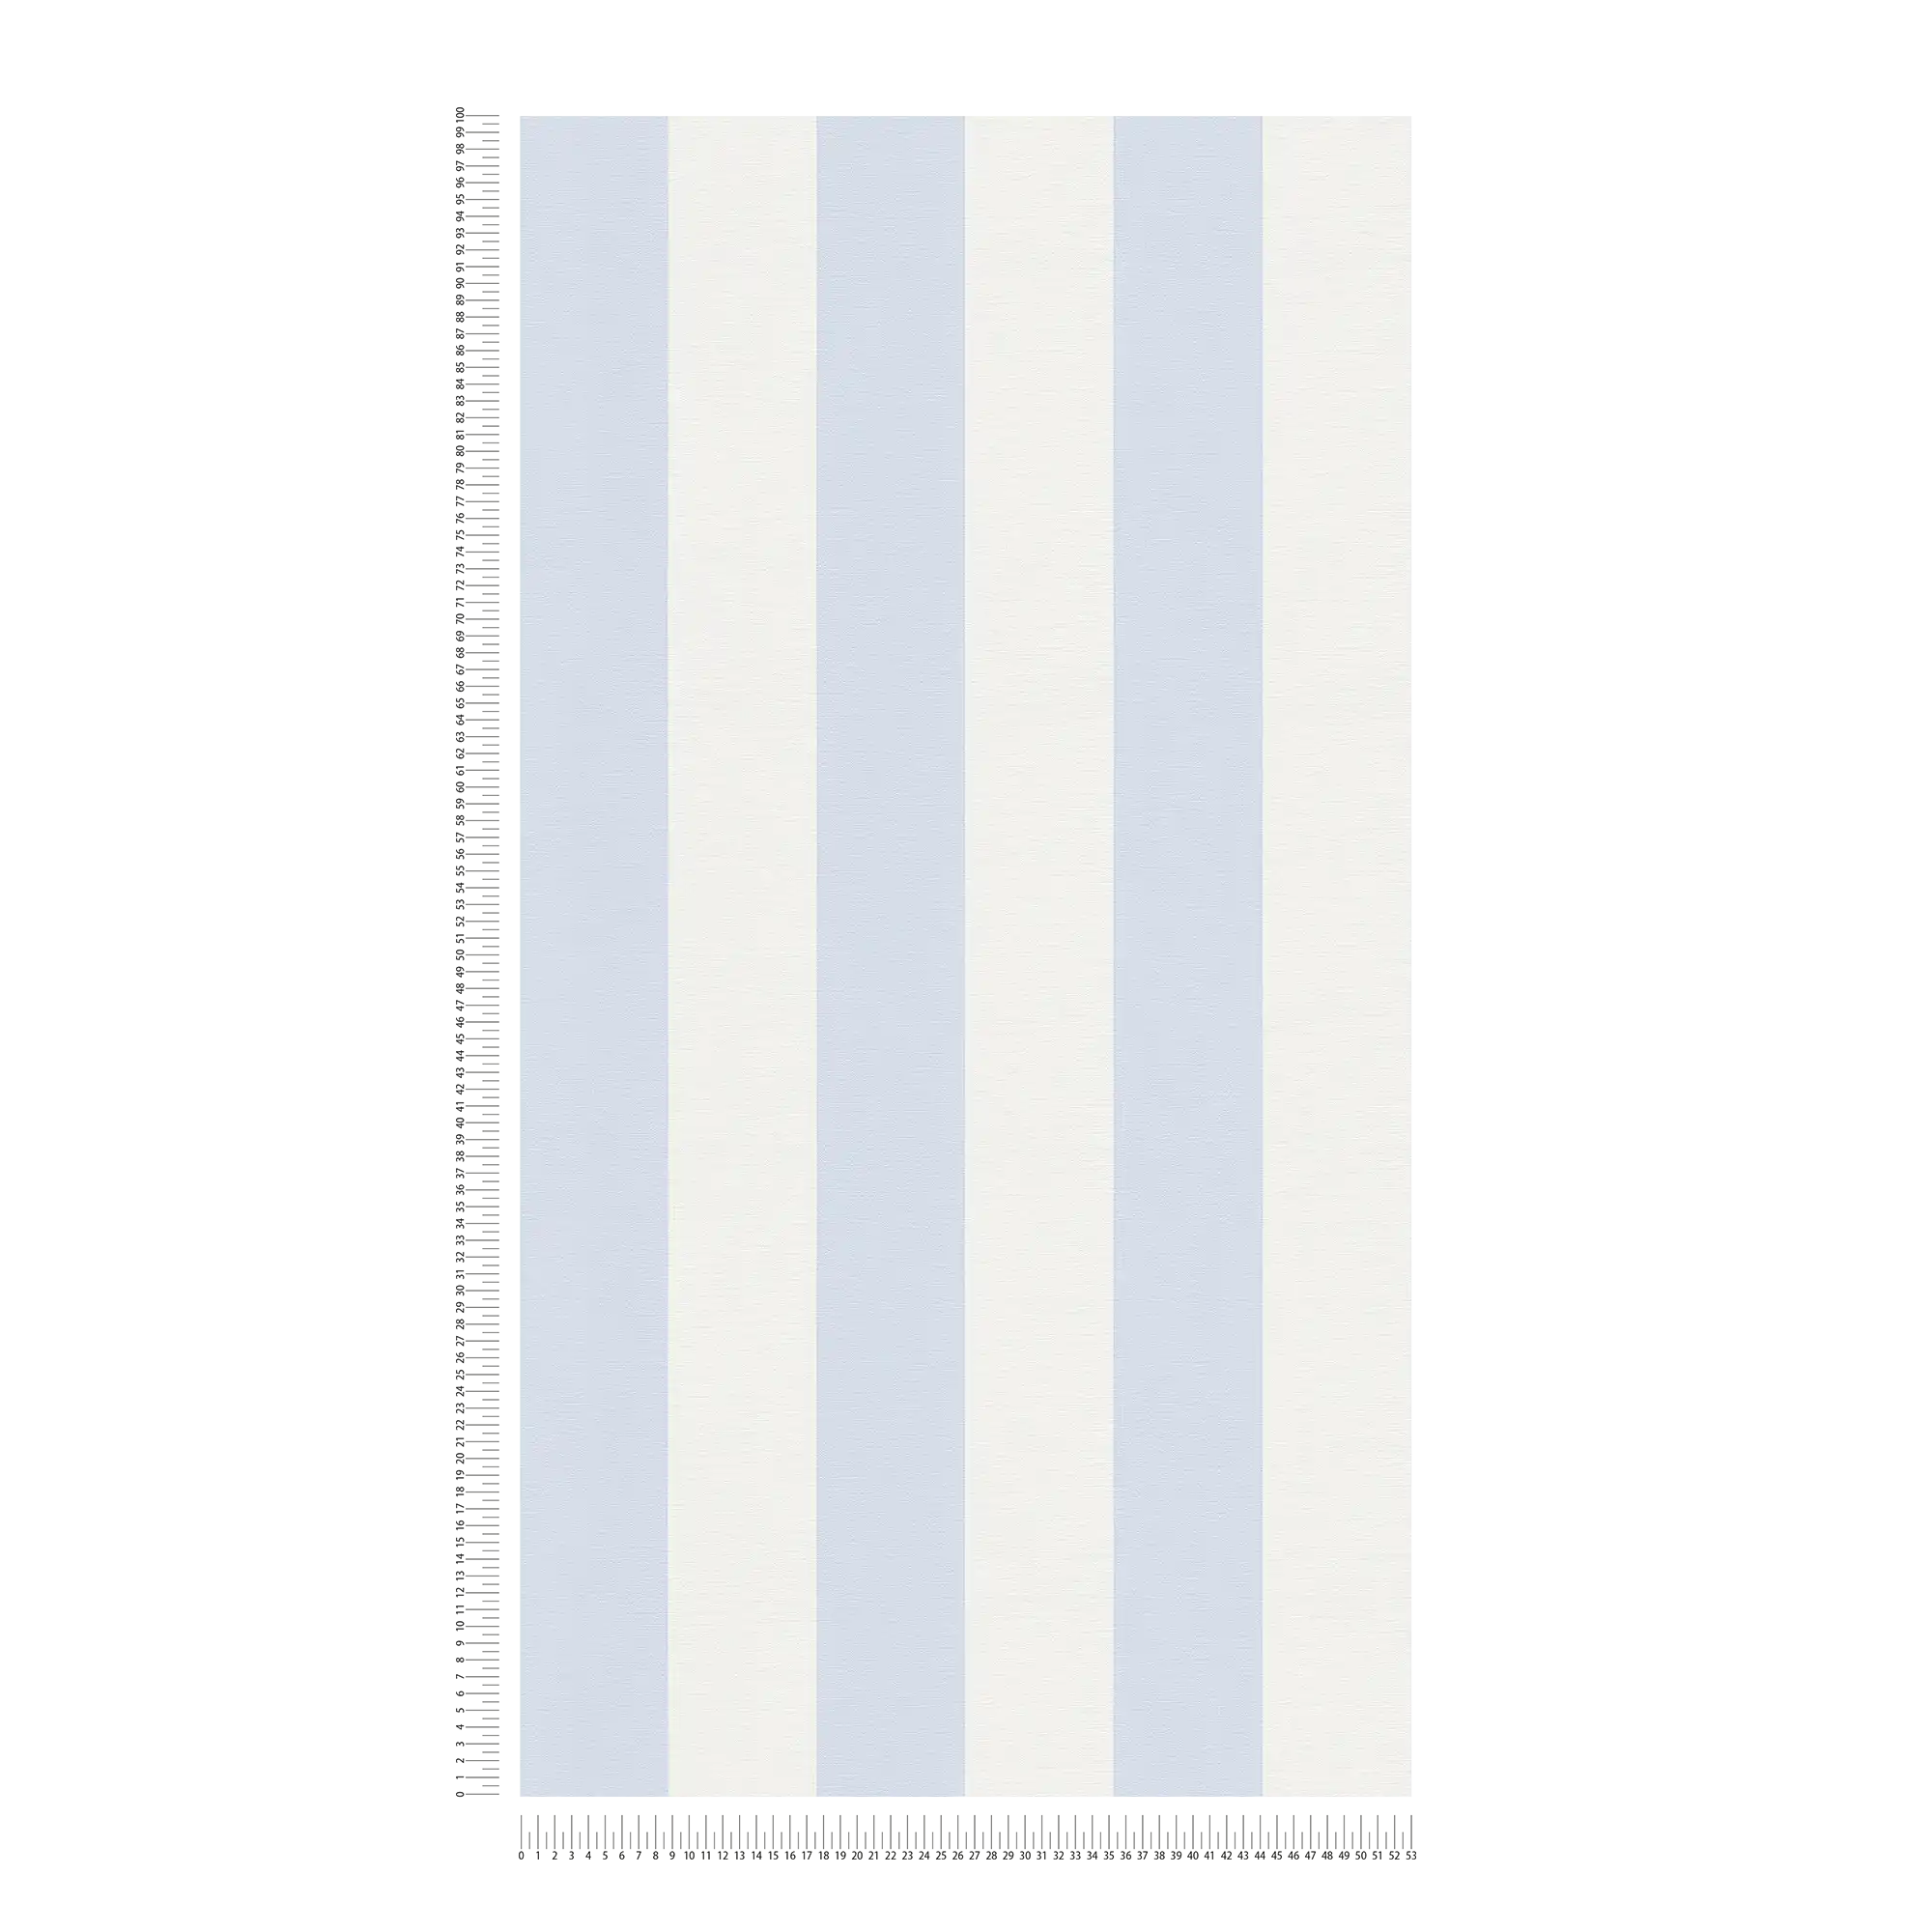             Blokstreepbehang met textiellook voor jong design - blauw, wit
        